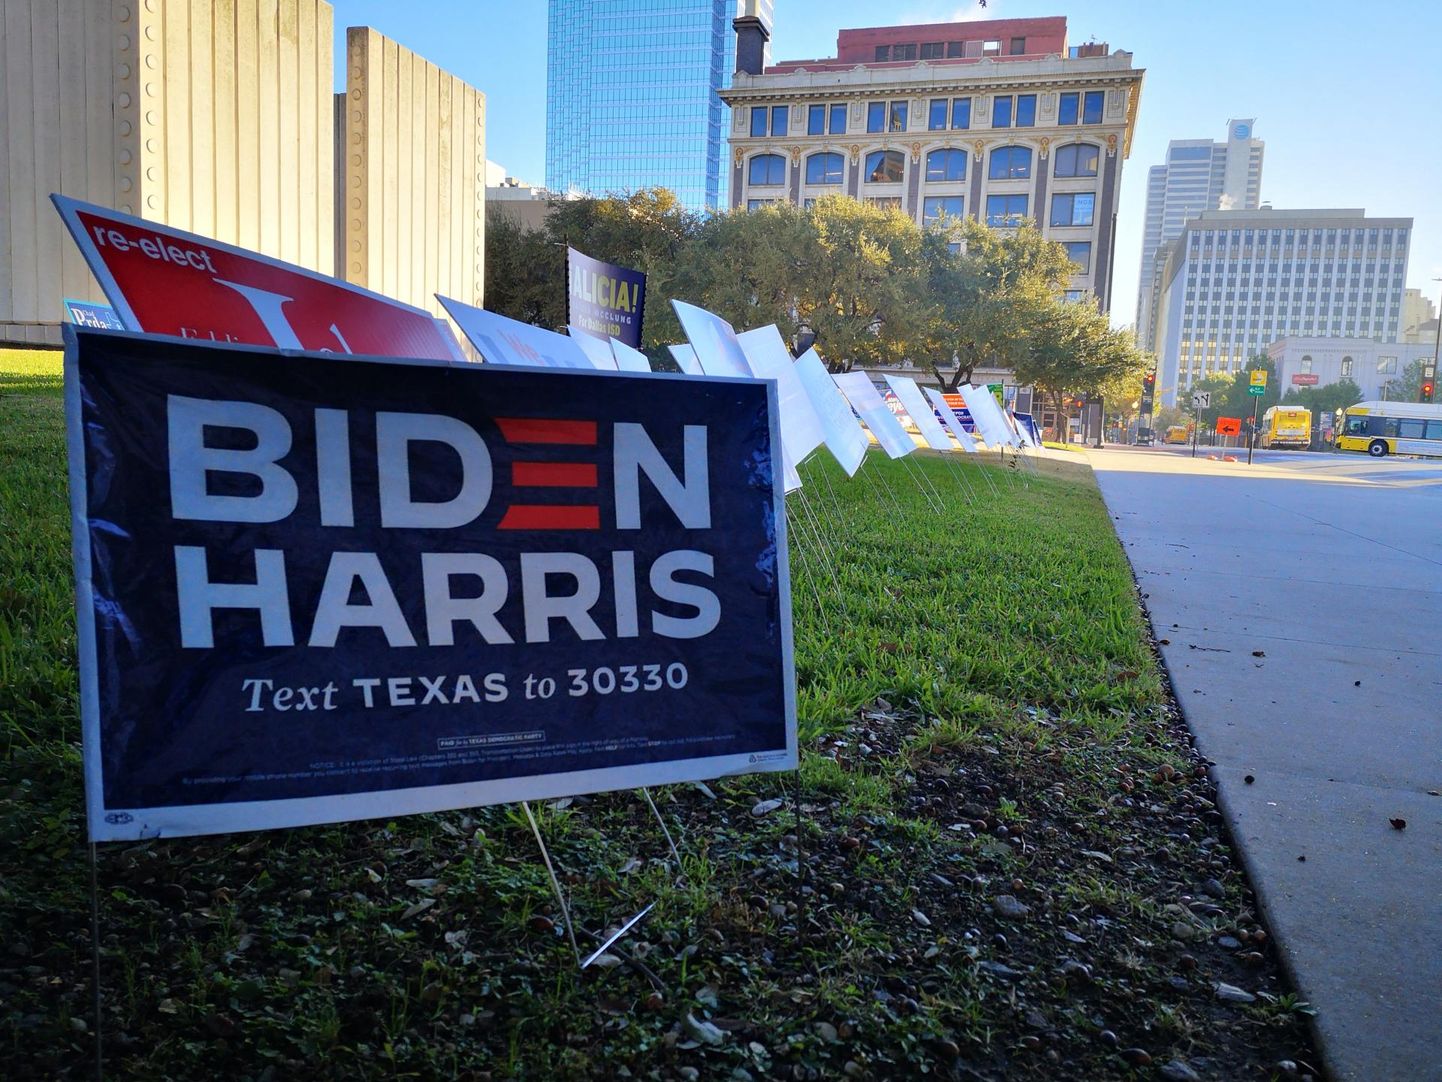 Võitlus Texases, kus demokraatidele pole presidendivalimistel häält antud 1976. aastast, kestab viimase hetkeni. Mike Bloomberg teatas hiljuti, et suunab Bideni kampaania toetuseks Texases ja Ohios veel 15 miljonit dollarit.